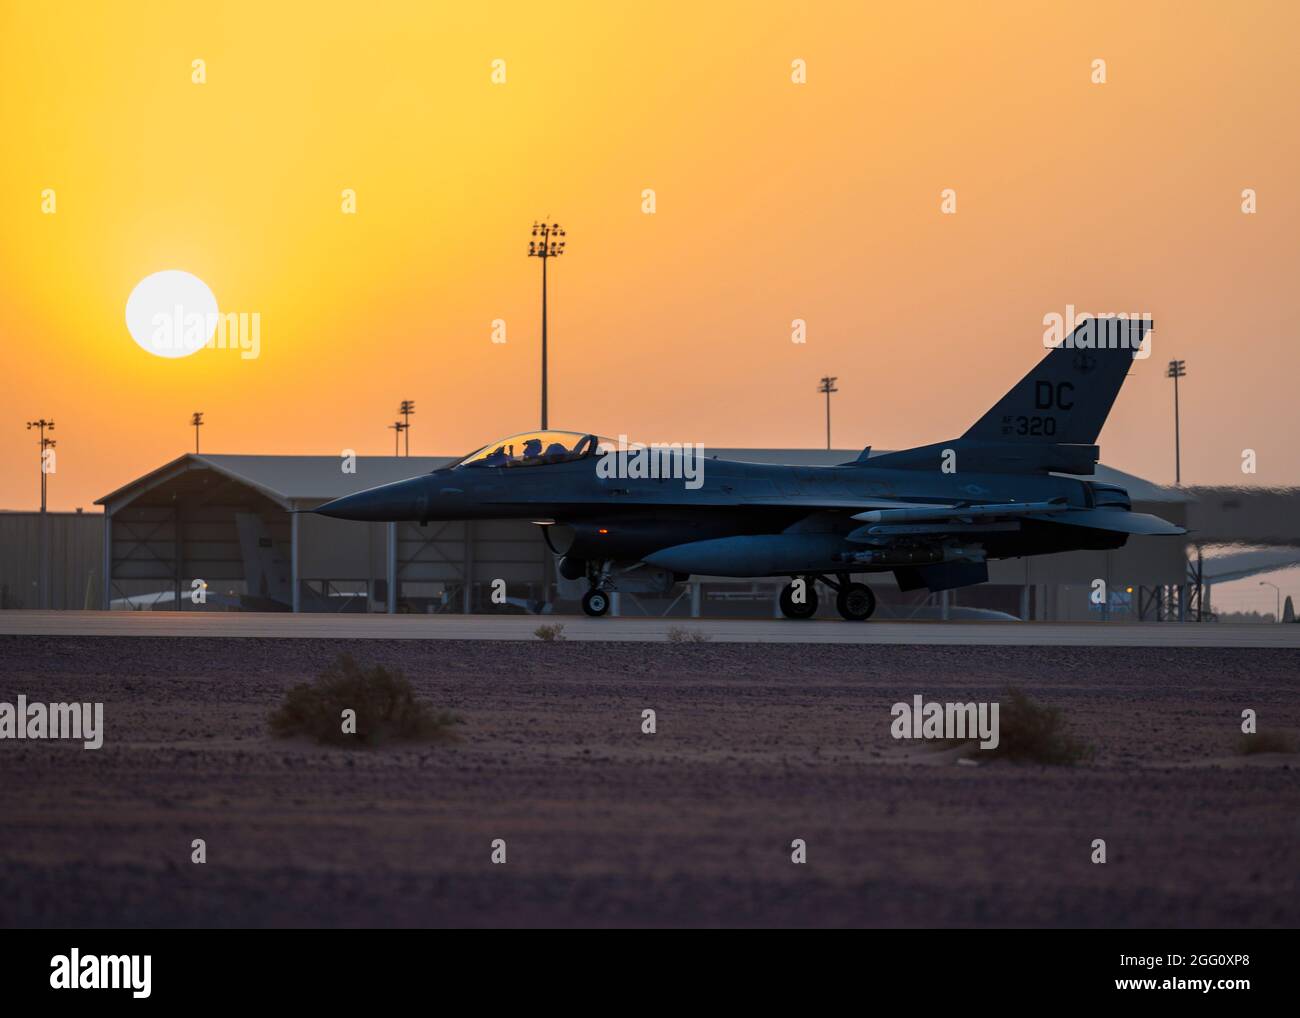 Un F-16 de la Force aérienne des États-Unis qui combat des taxis Falcon jusqu'à la piste de la base aérienne de Prince Sultan, Royaume d'Arabie saoudite, en préparation à une sortie de patrouille aérienne de combat dans la zone de responsabilité du Commandement central des États-Unis. La 378e Escadre expéditionnaire aérienne fournit un soutien aérien, des capacités logistiques, de la main-d'œuvre et des ressources au Centre de la Force aérienne des États-Unis pour appuyer les opérations d'évacuation non combattantes en cours. (É.-U. Photo de la Force aérienne par le premier Airman Samuel Earick) Banque D'Images